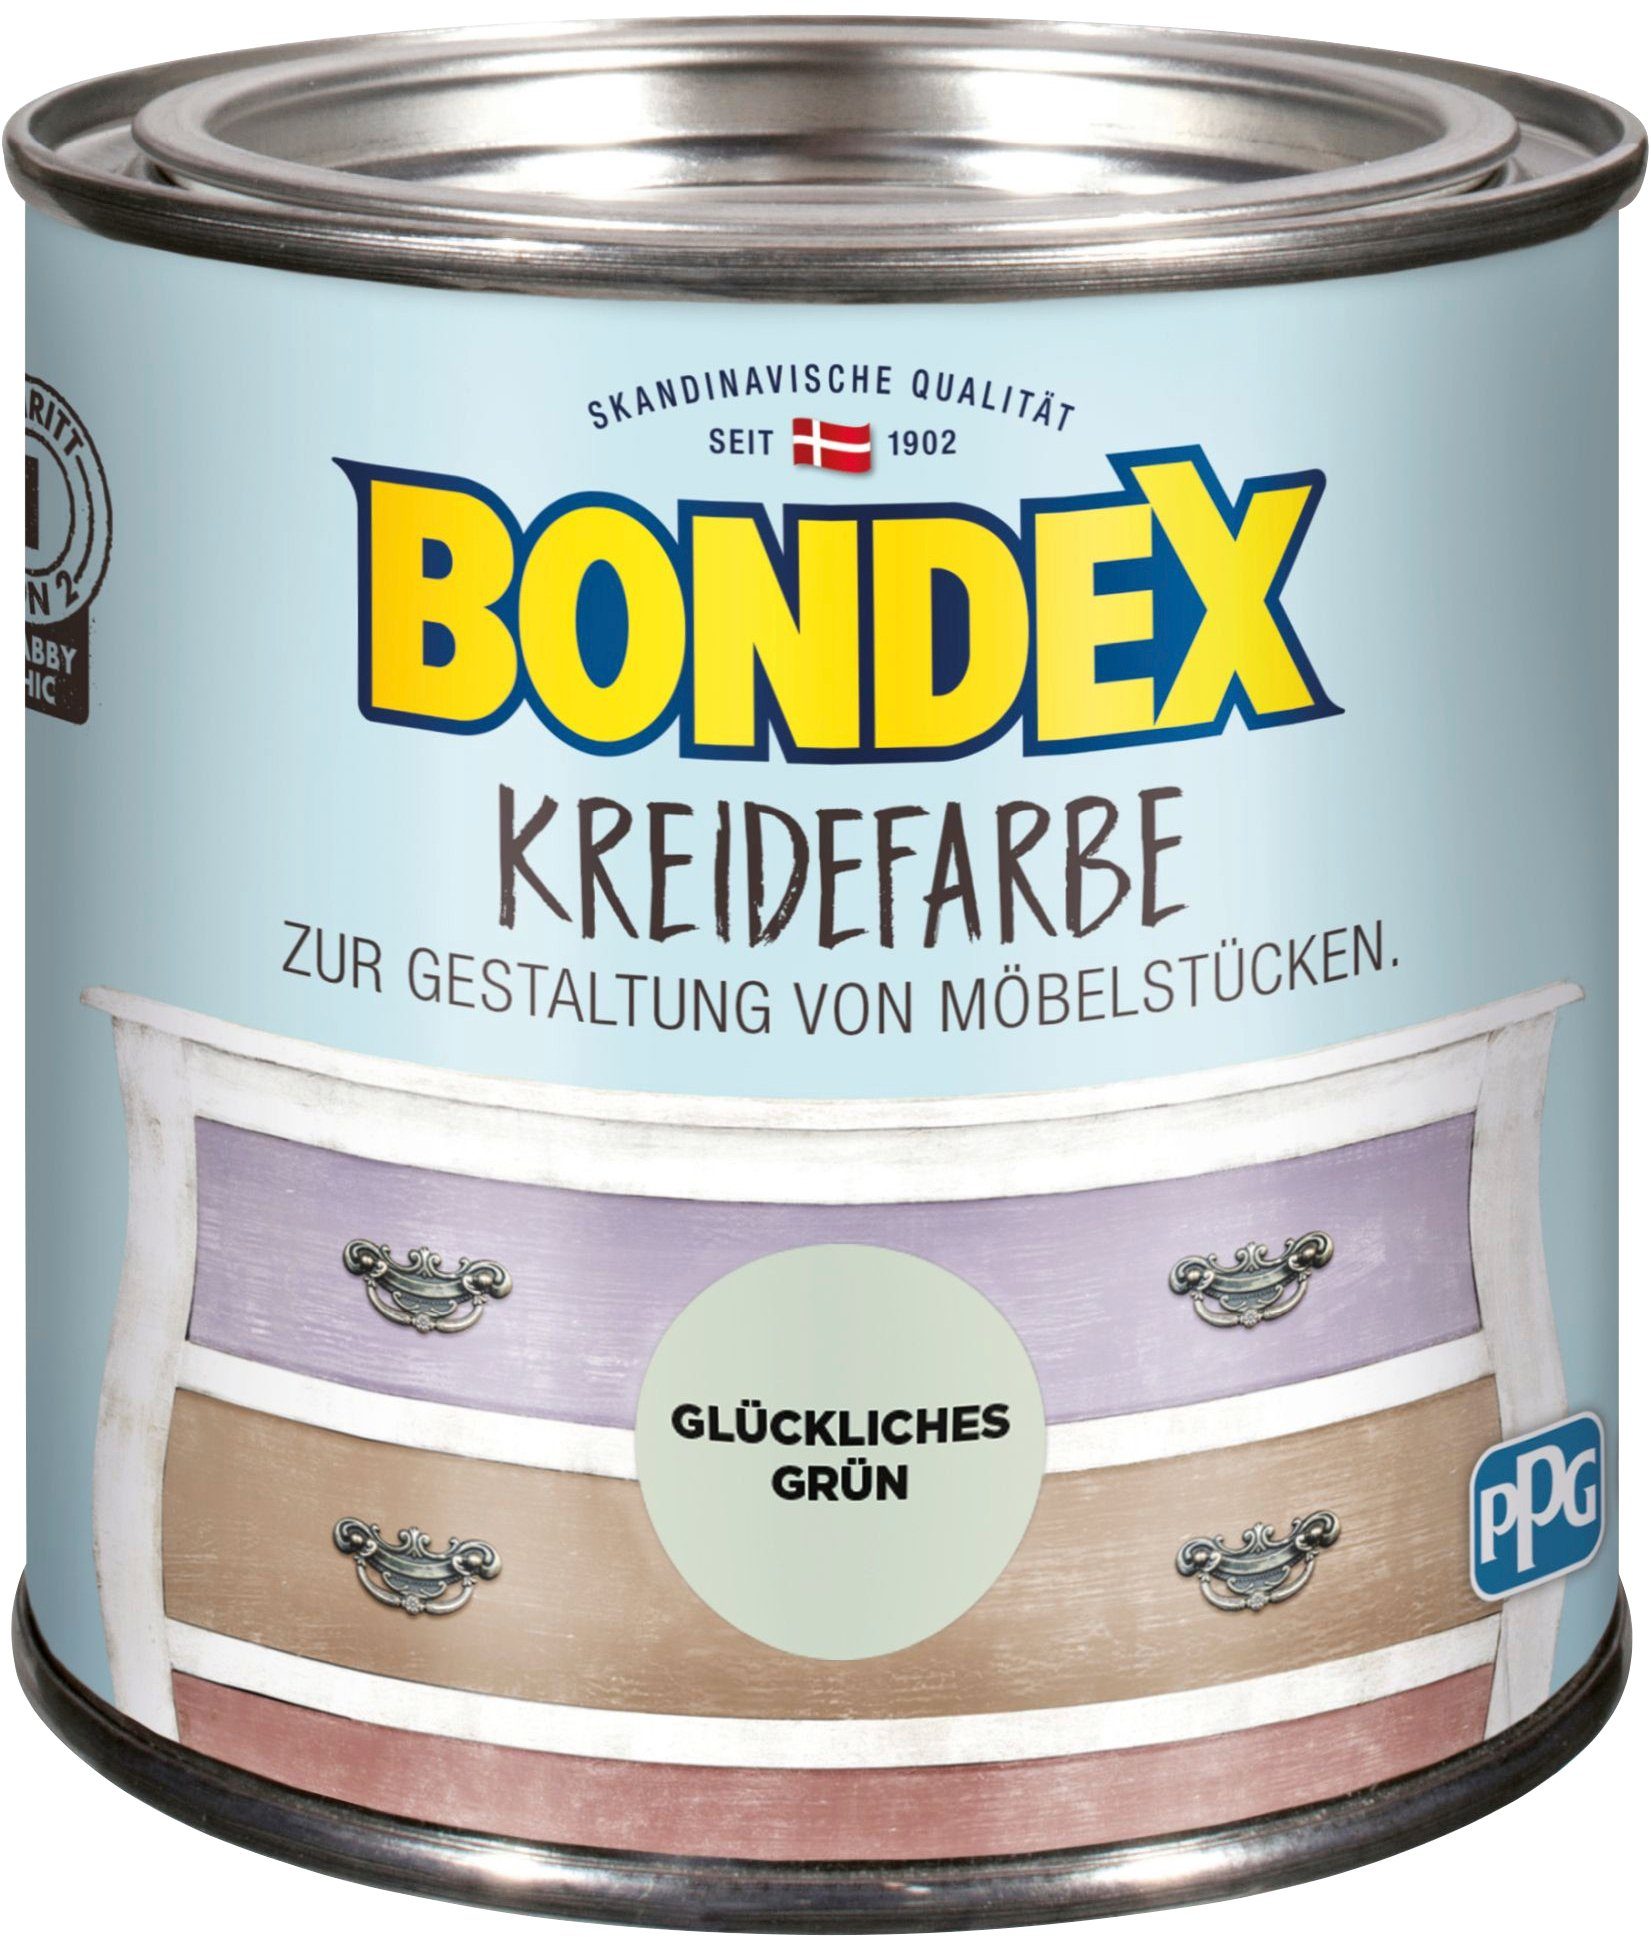 Bondex Kreidefarbe KREIDEFARBE, zur Gestaltung von Möbelstücken, 0,5 l Glückliches Grün